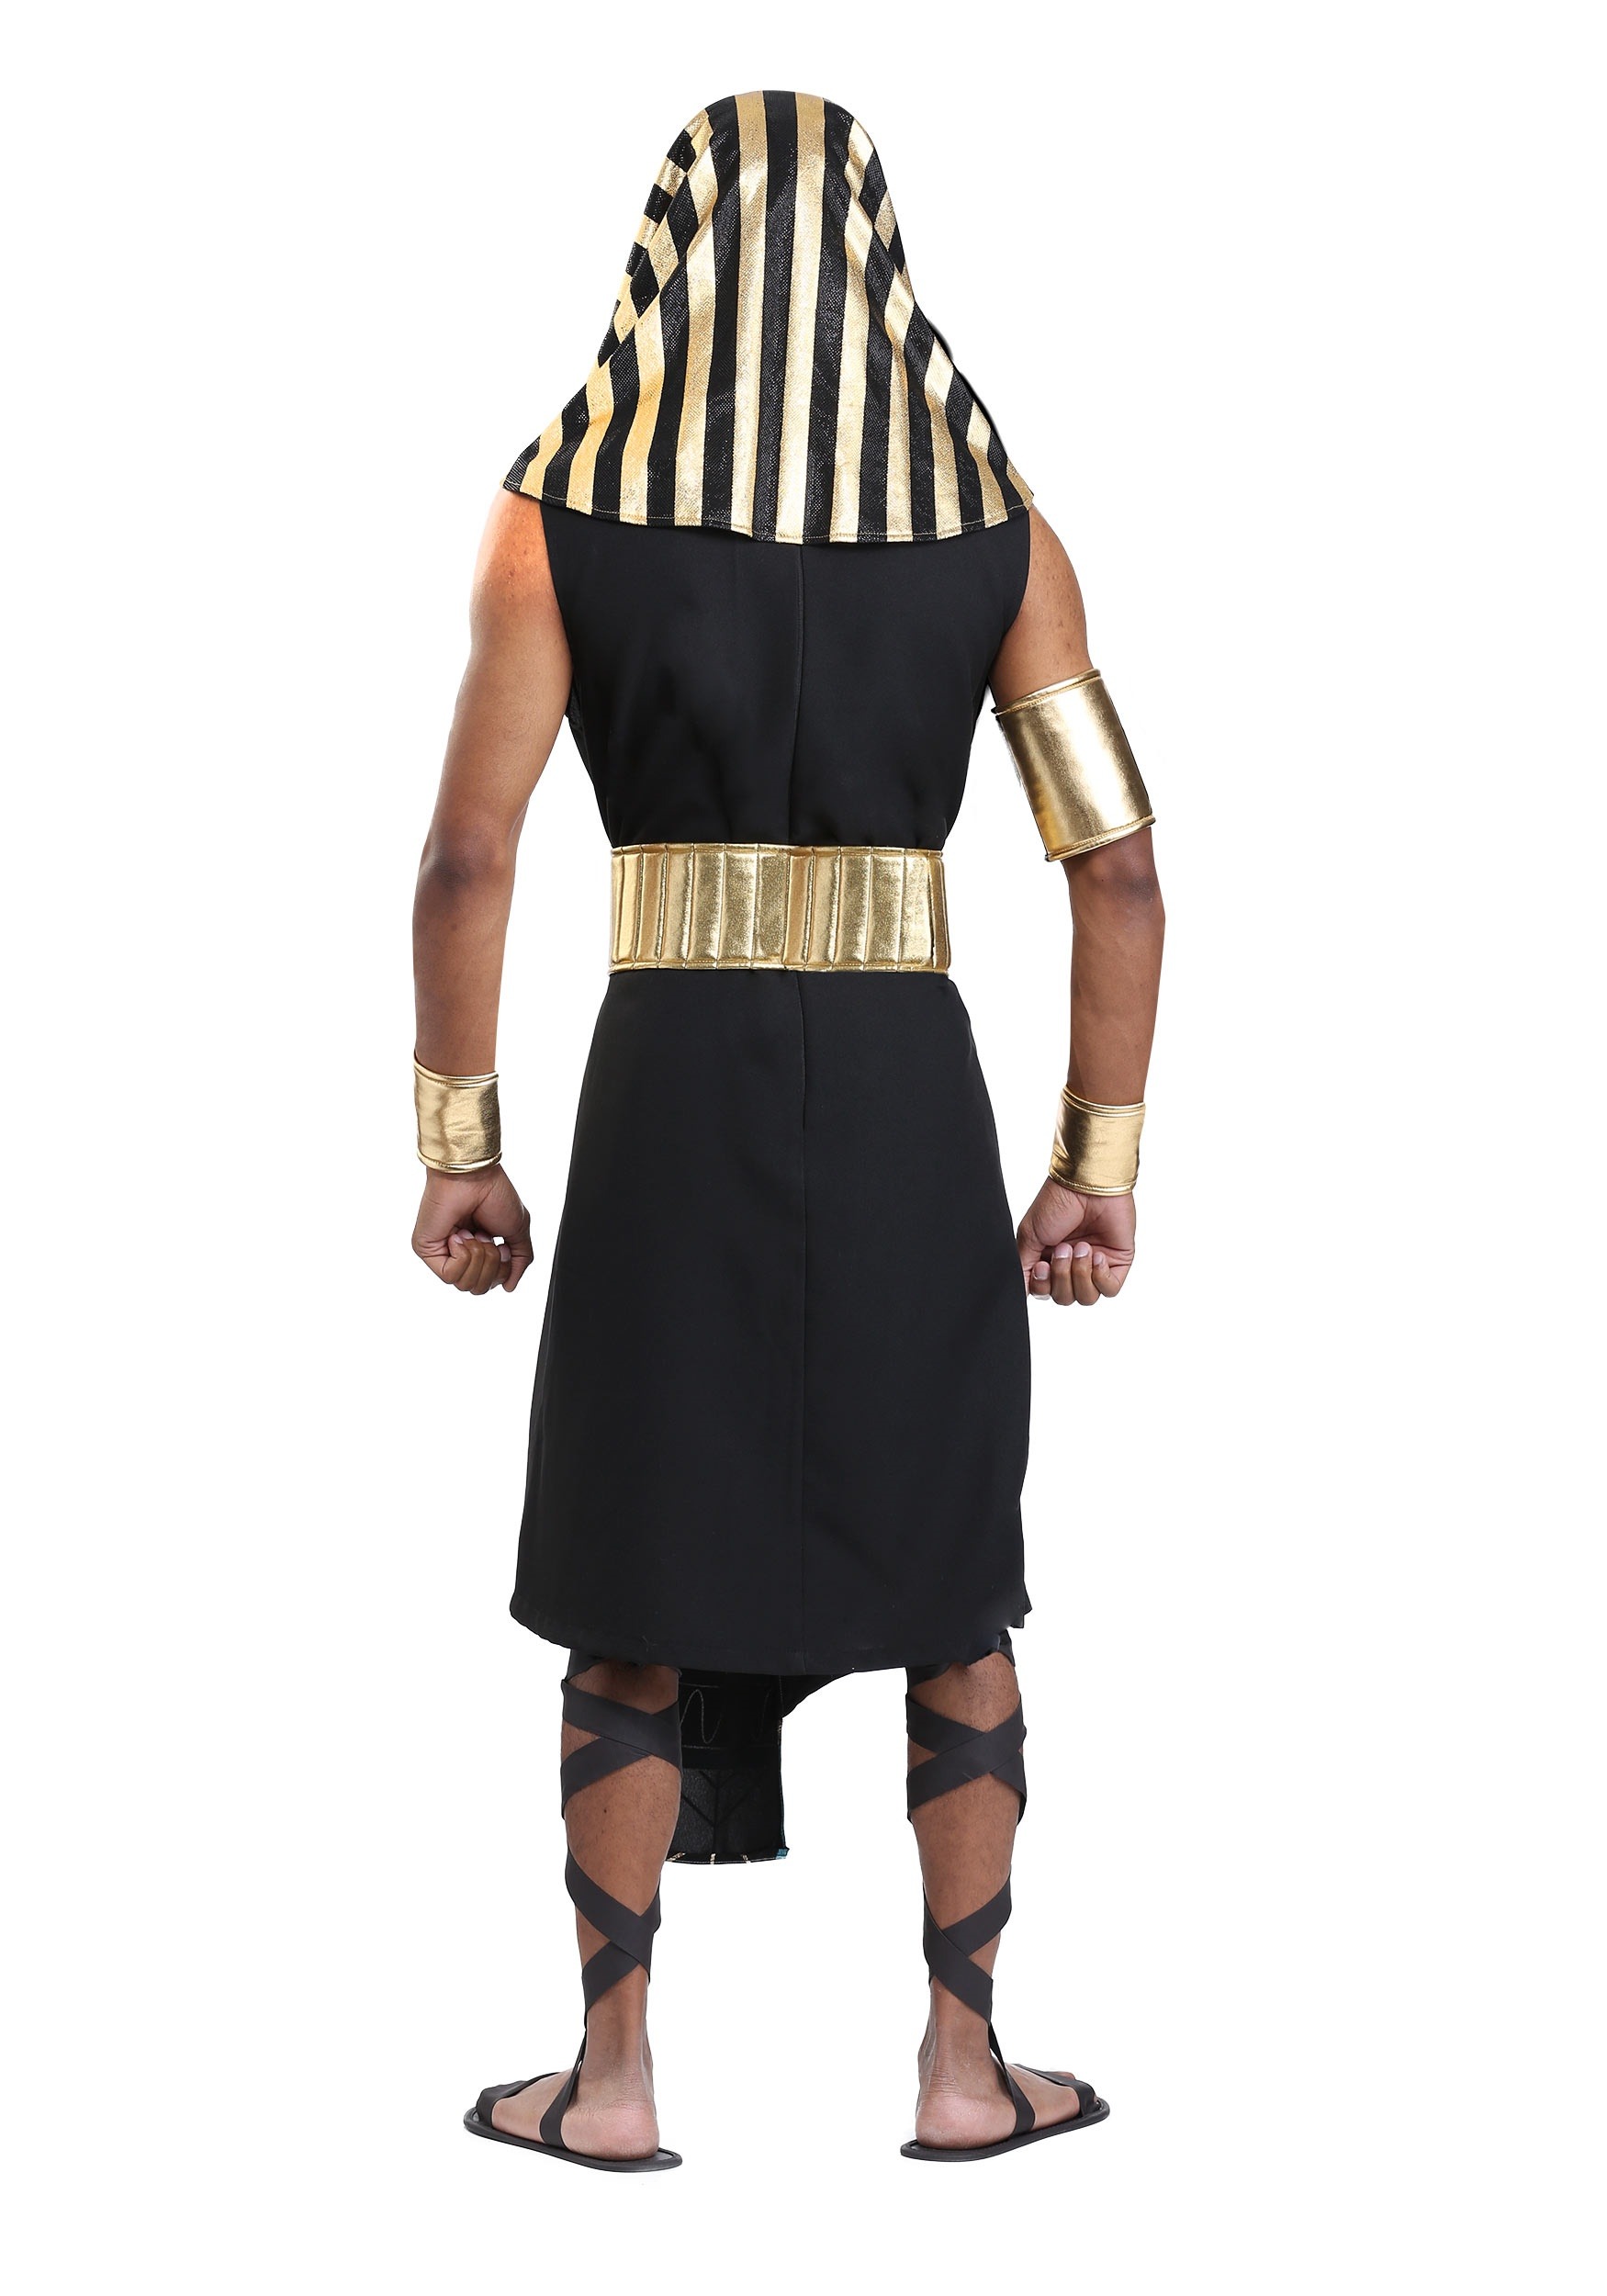 Dark Pharaoh Men's Fancy Dress Costume